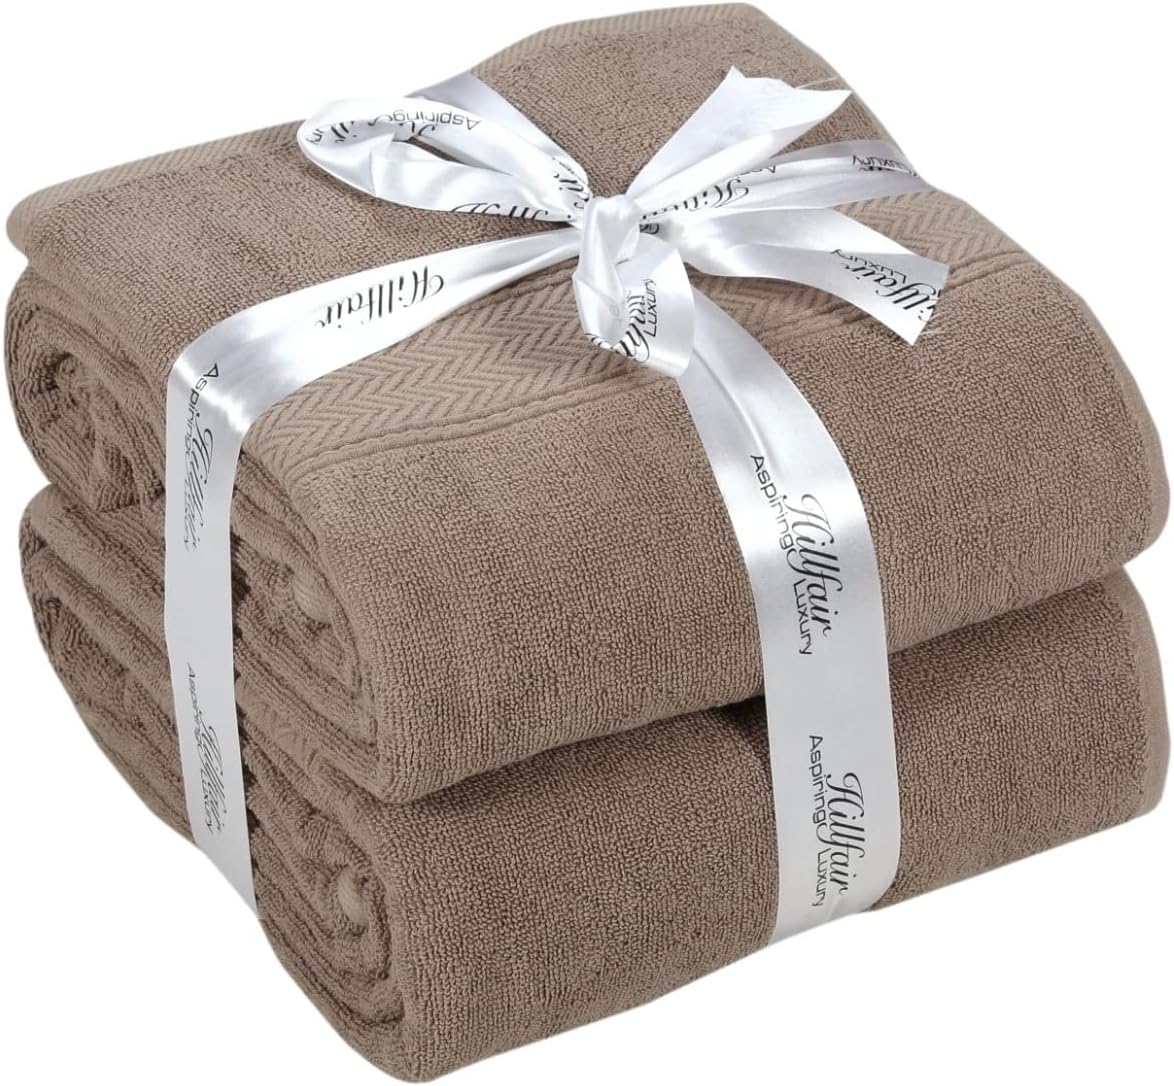 HILLFAIR 24 Piece Premium Towel Set, 100% Cotton 24 Pack Bath Towel Set, Ultra S